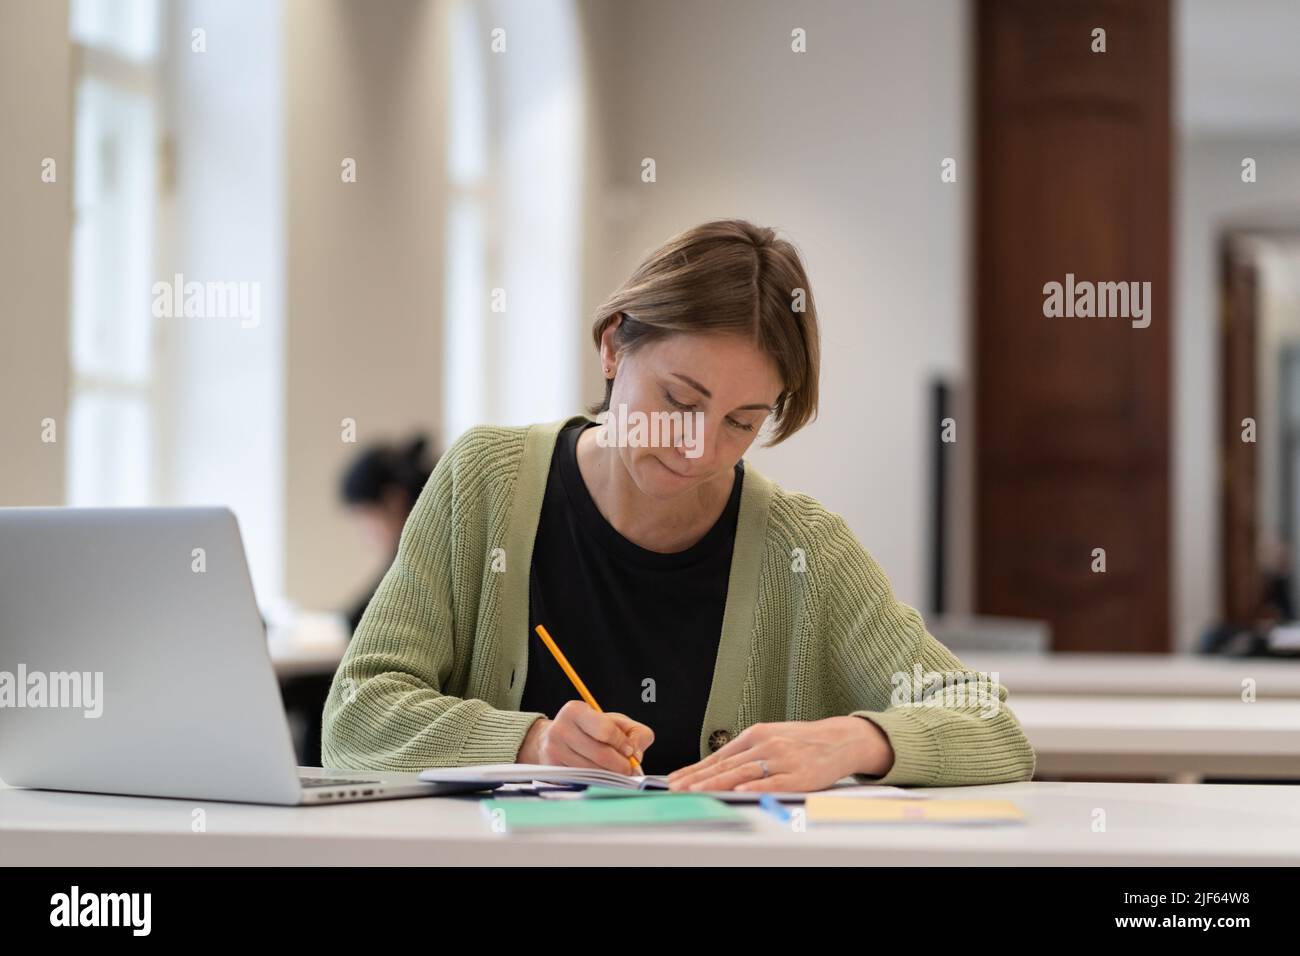 Studentin mittleren Alters, die sich auf die Prüfung in der öffentlichen Bibliothek vorbereitet, während sie mit einem Laptop am Tisch sitzt Stockfoto